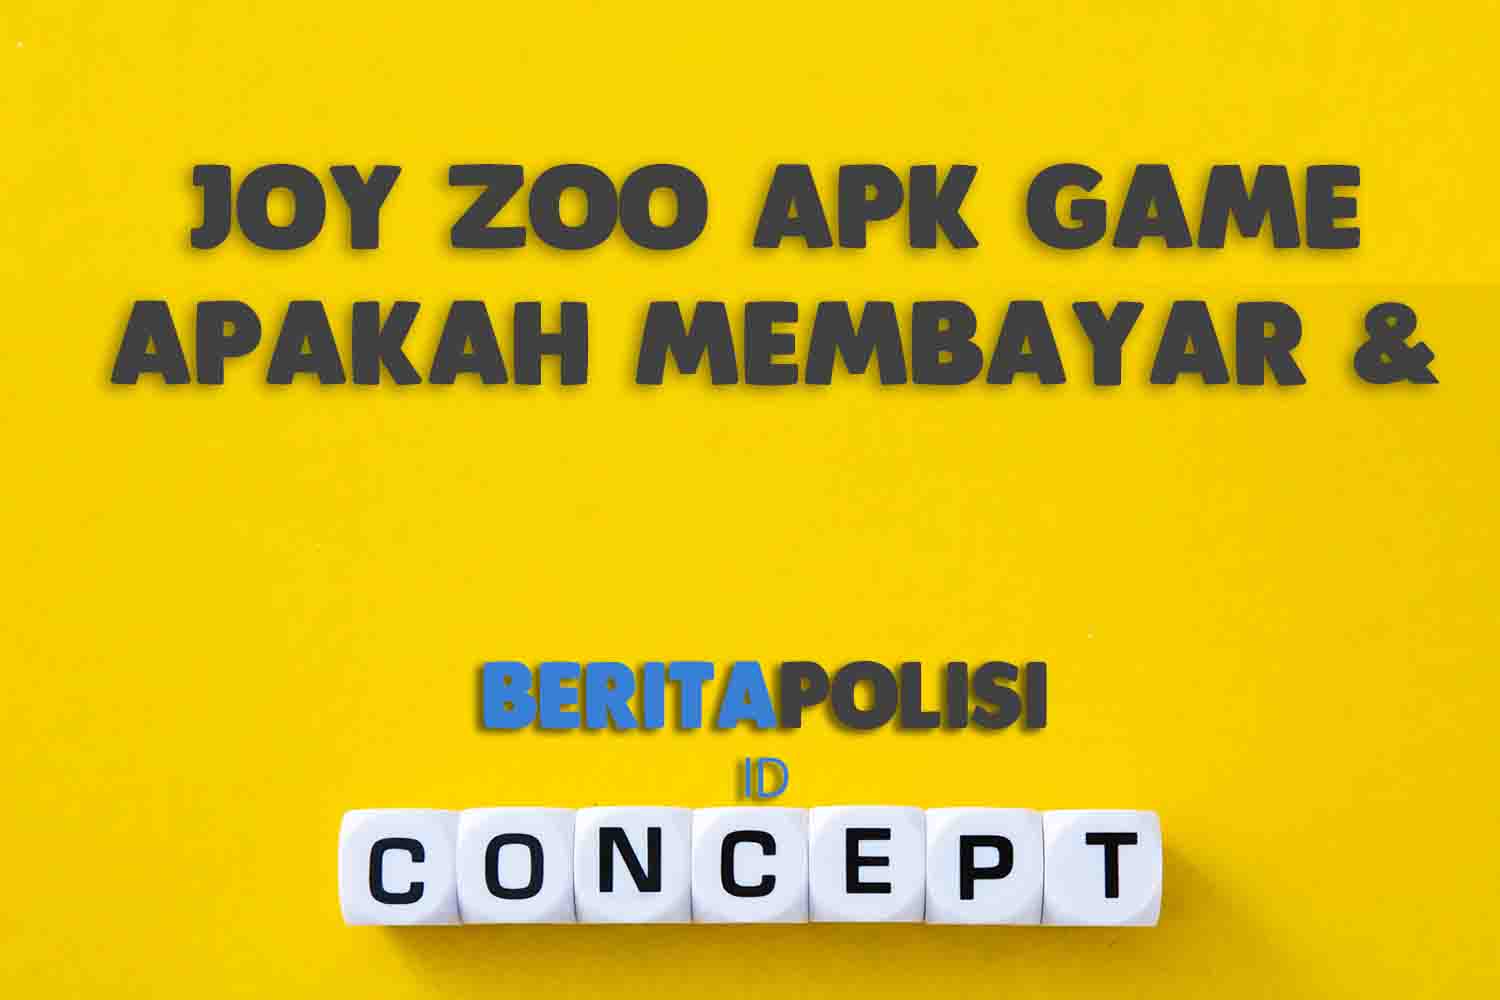 Joy Zoo Apk Game Apakah Membayar Aman Ada Bonus 10Rb